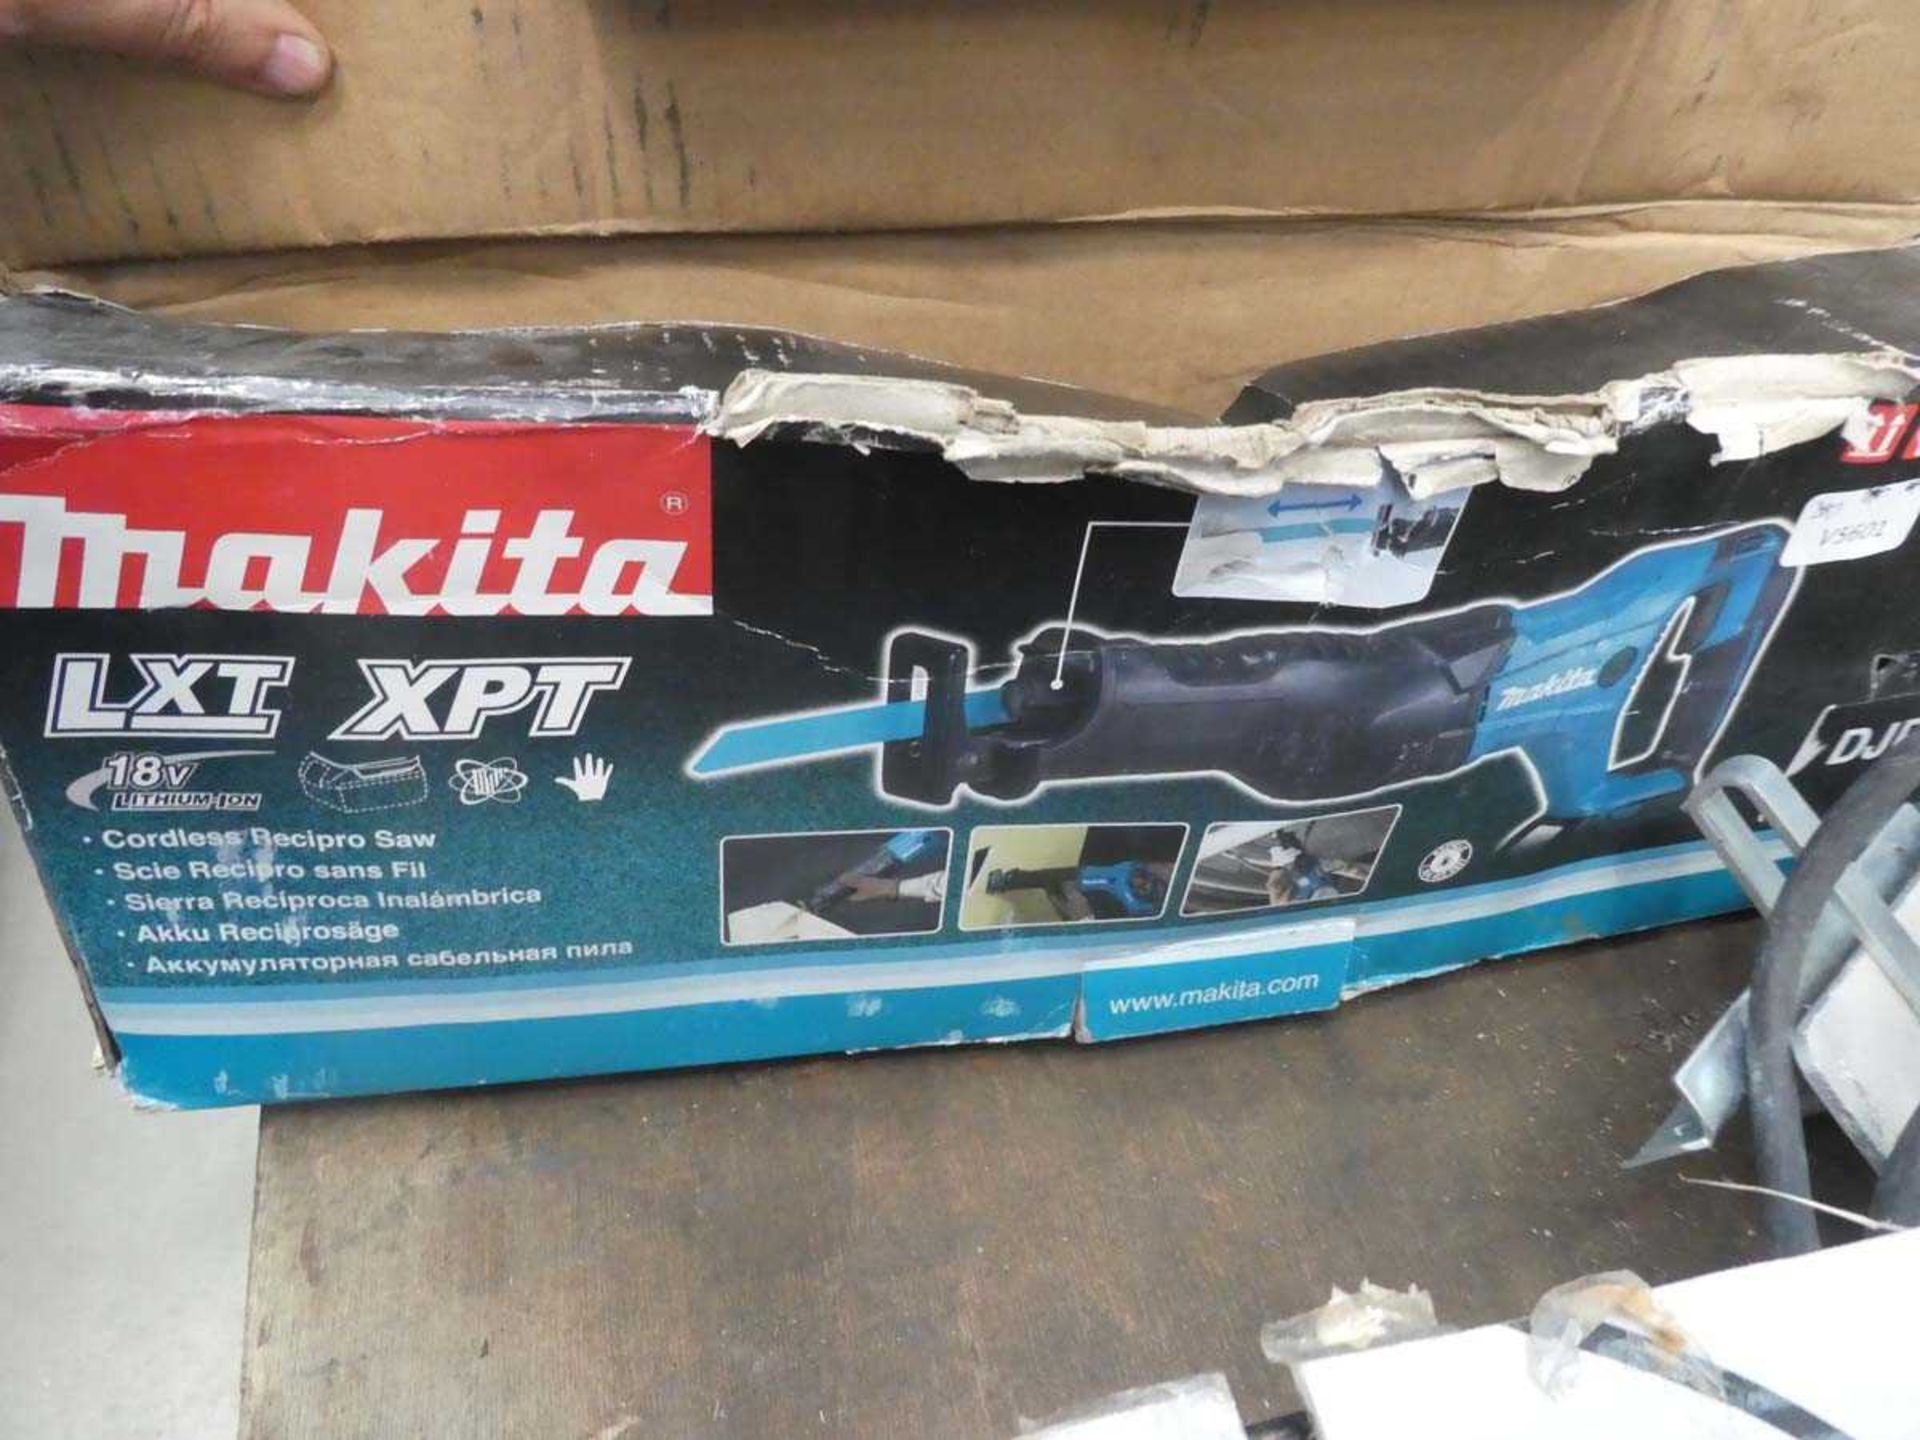 Makita reciprocating saw, no battery or charger